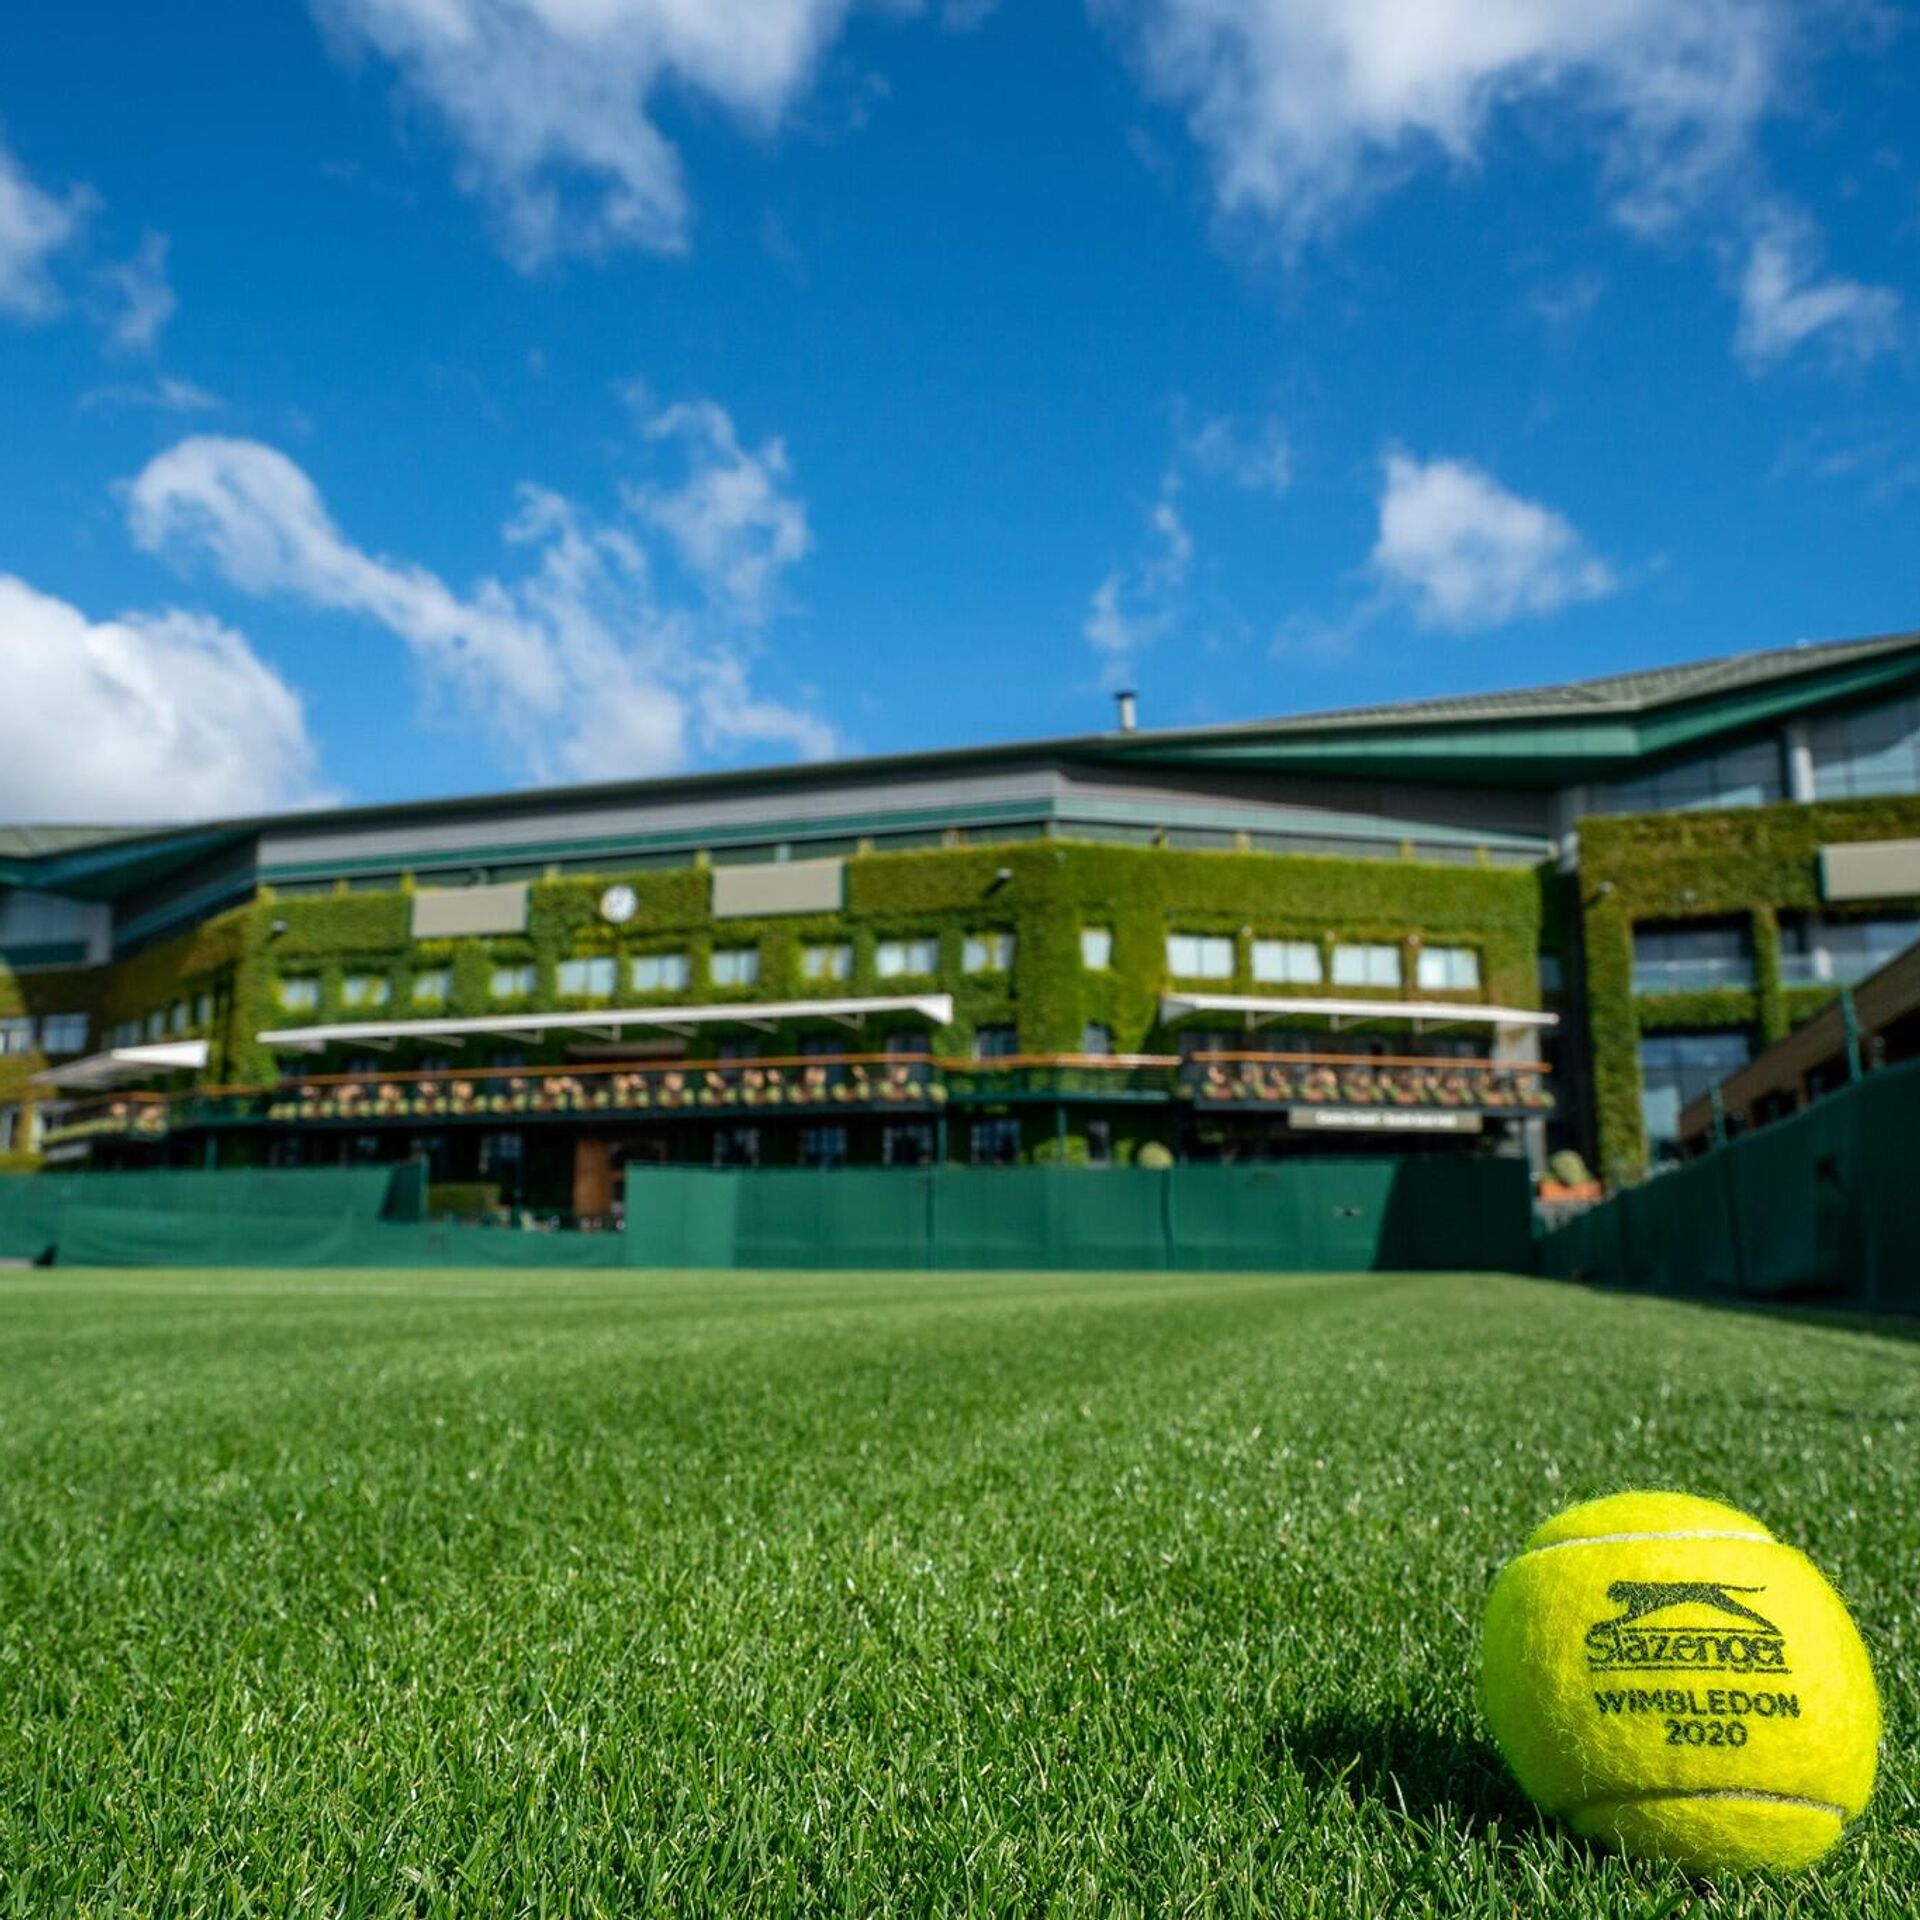 Теннис стадион. Теннис Wimbledon. Уимблдон 2020. Уимблдон стадион. Tennis Court Wimbledon.